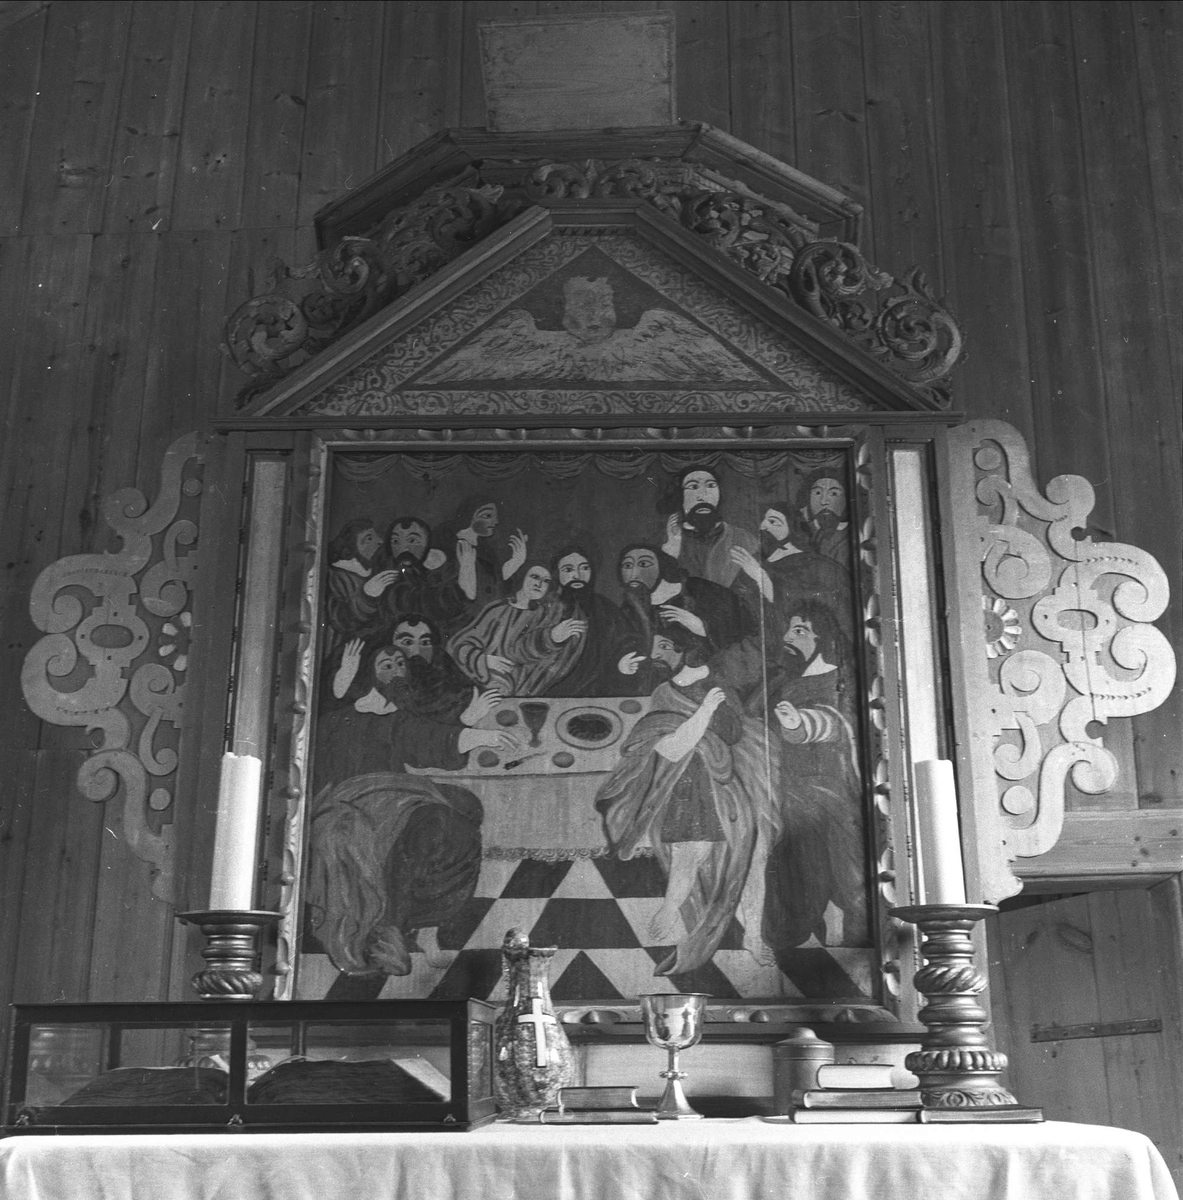 Altertavle i ukjent kirke, fotografert i 1959. Antakelig i nærheten av Ål.